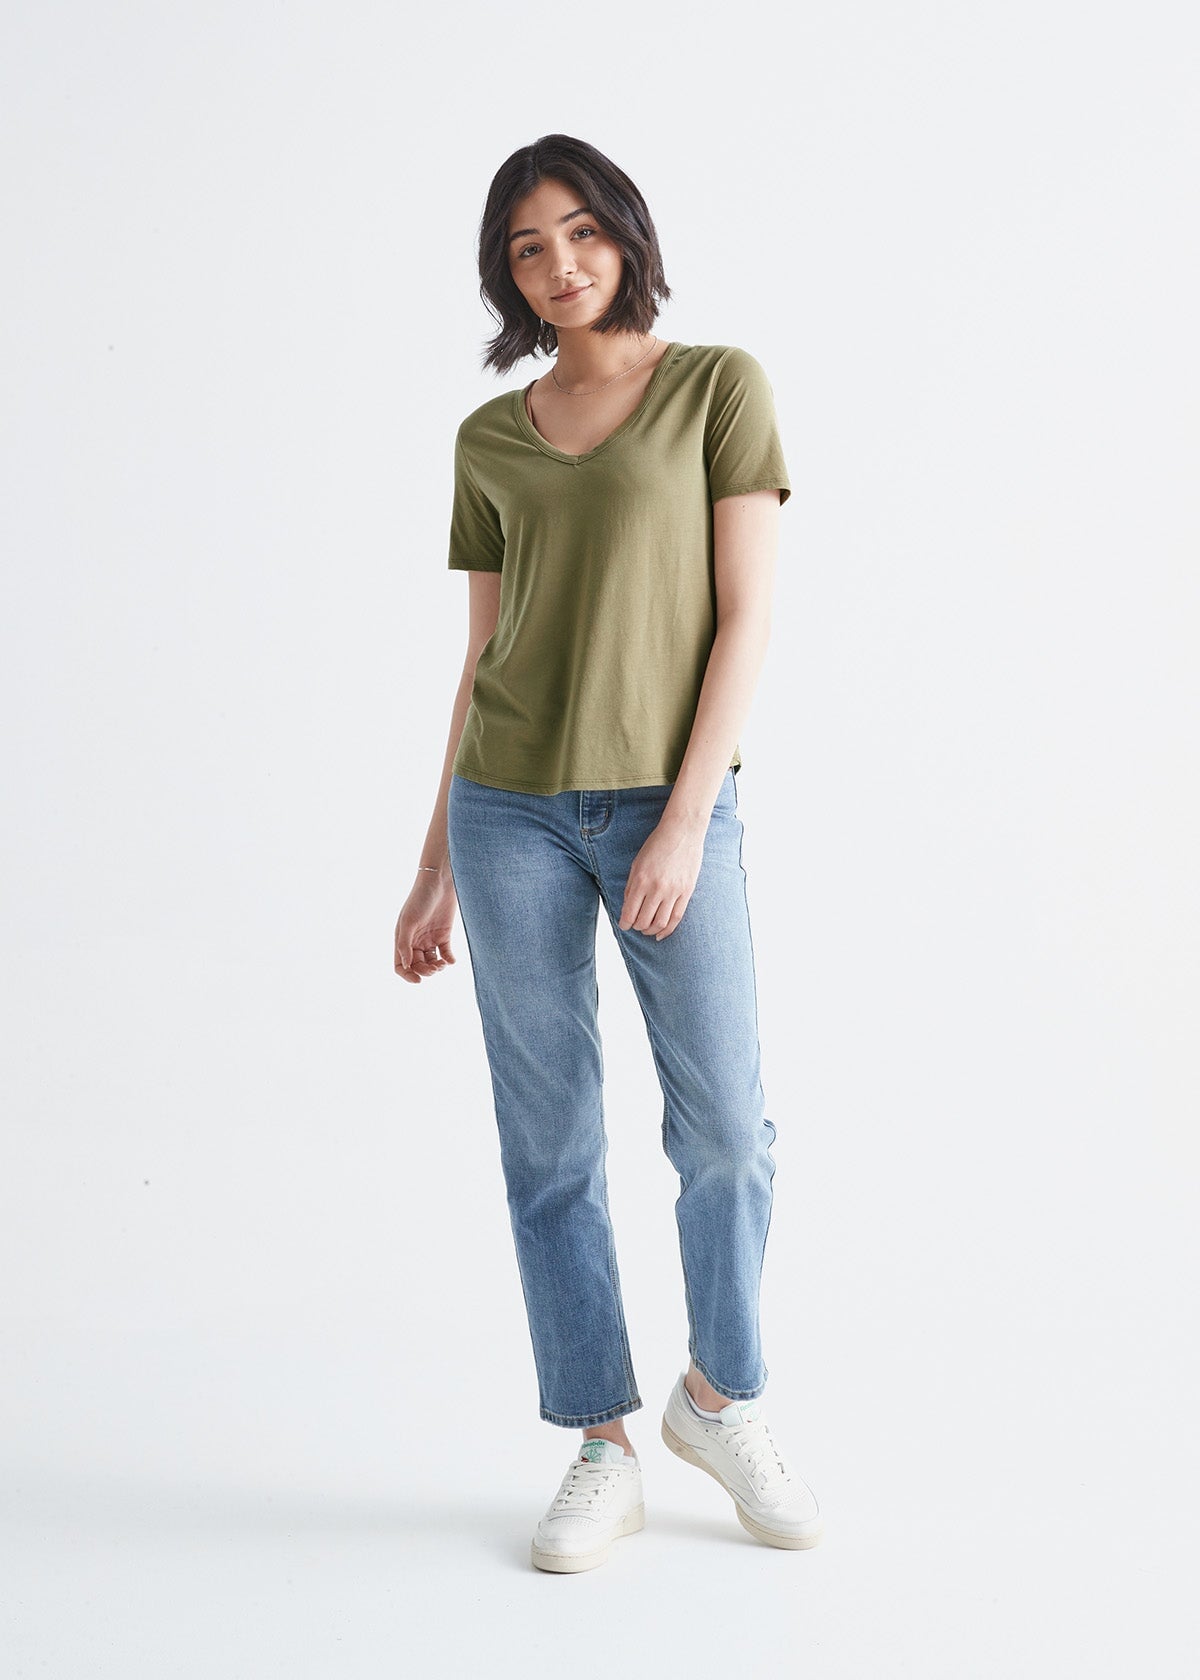 womens soft light-weight olive v-neck t-shirt full body